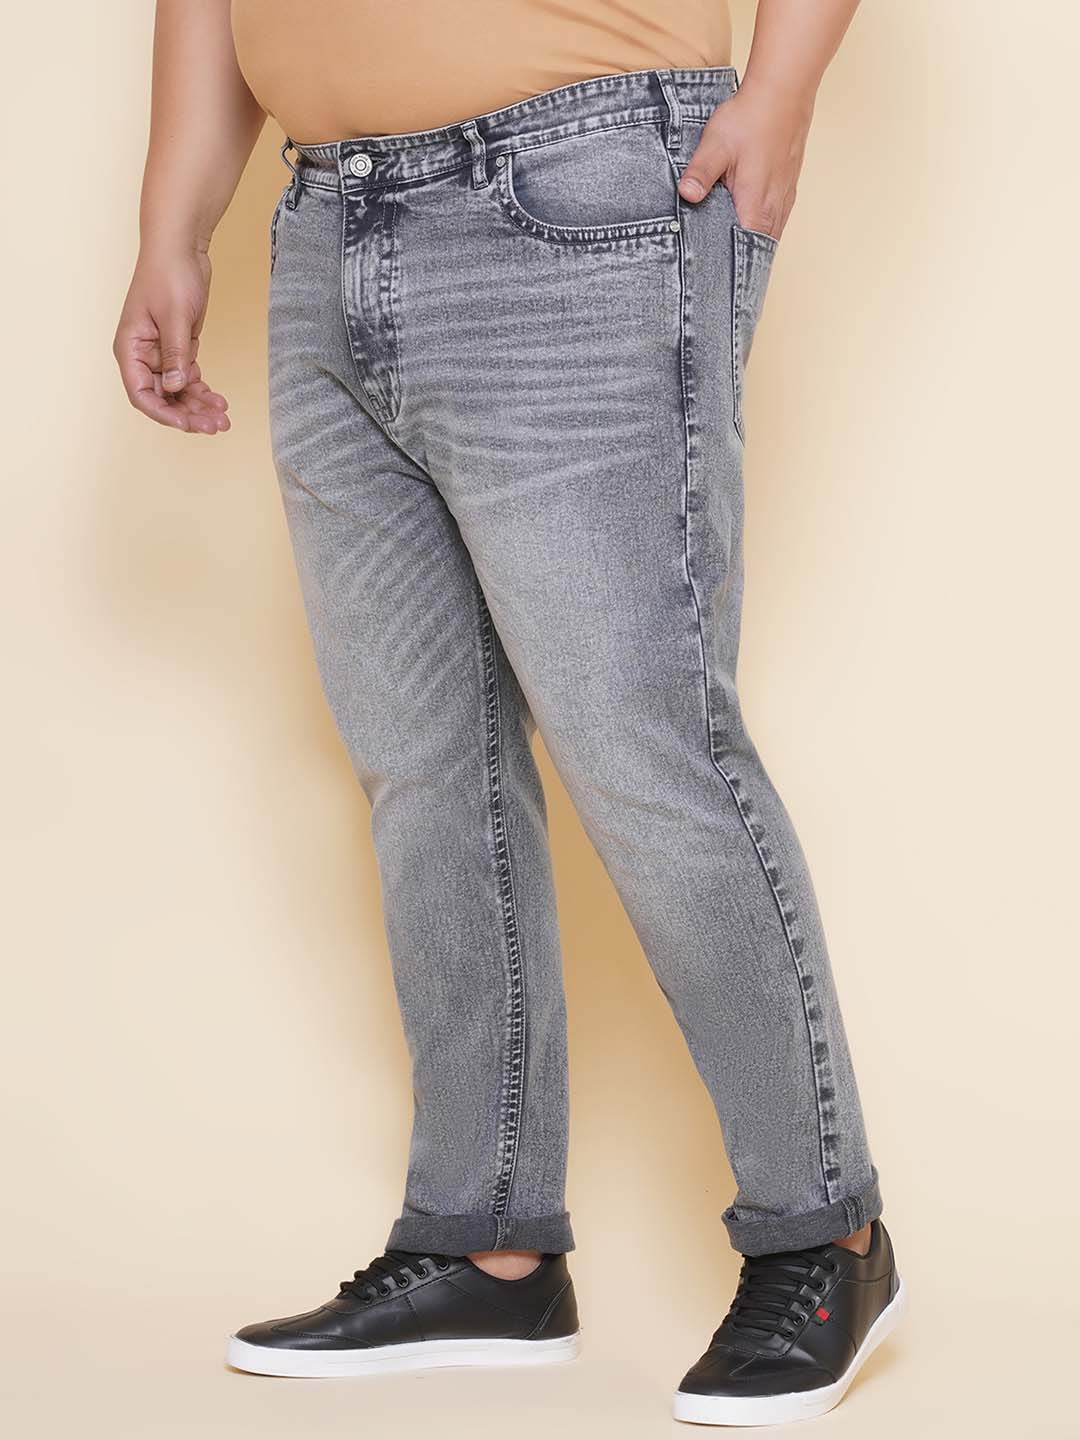 bottomwear/jeans/JPJ12430/jpj12430-4.jpg